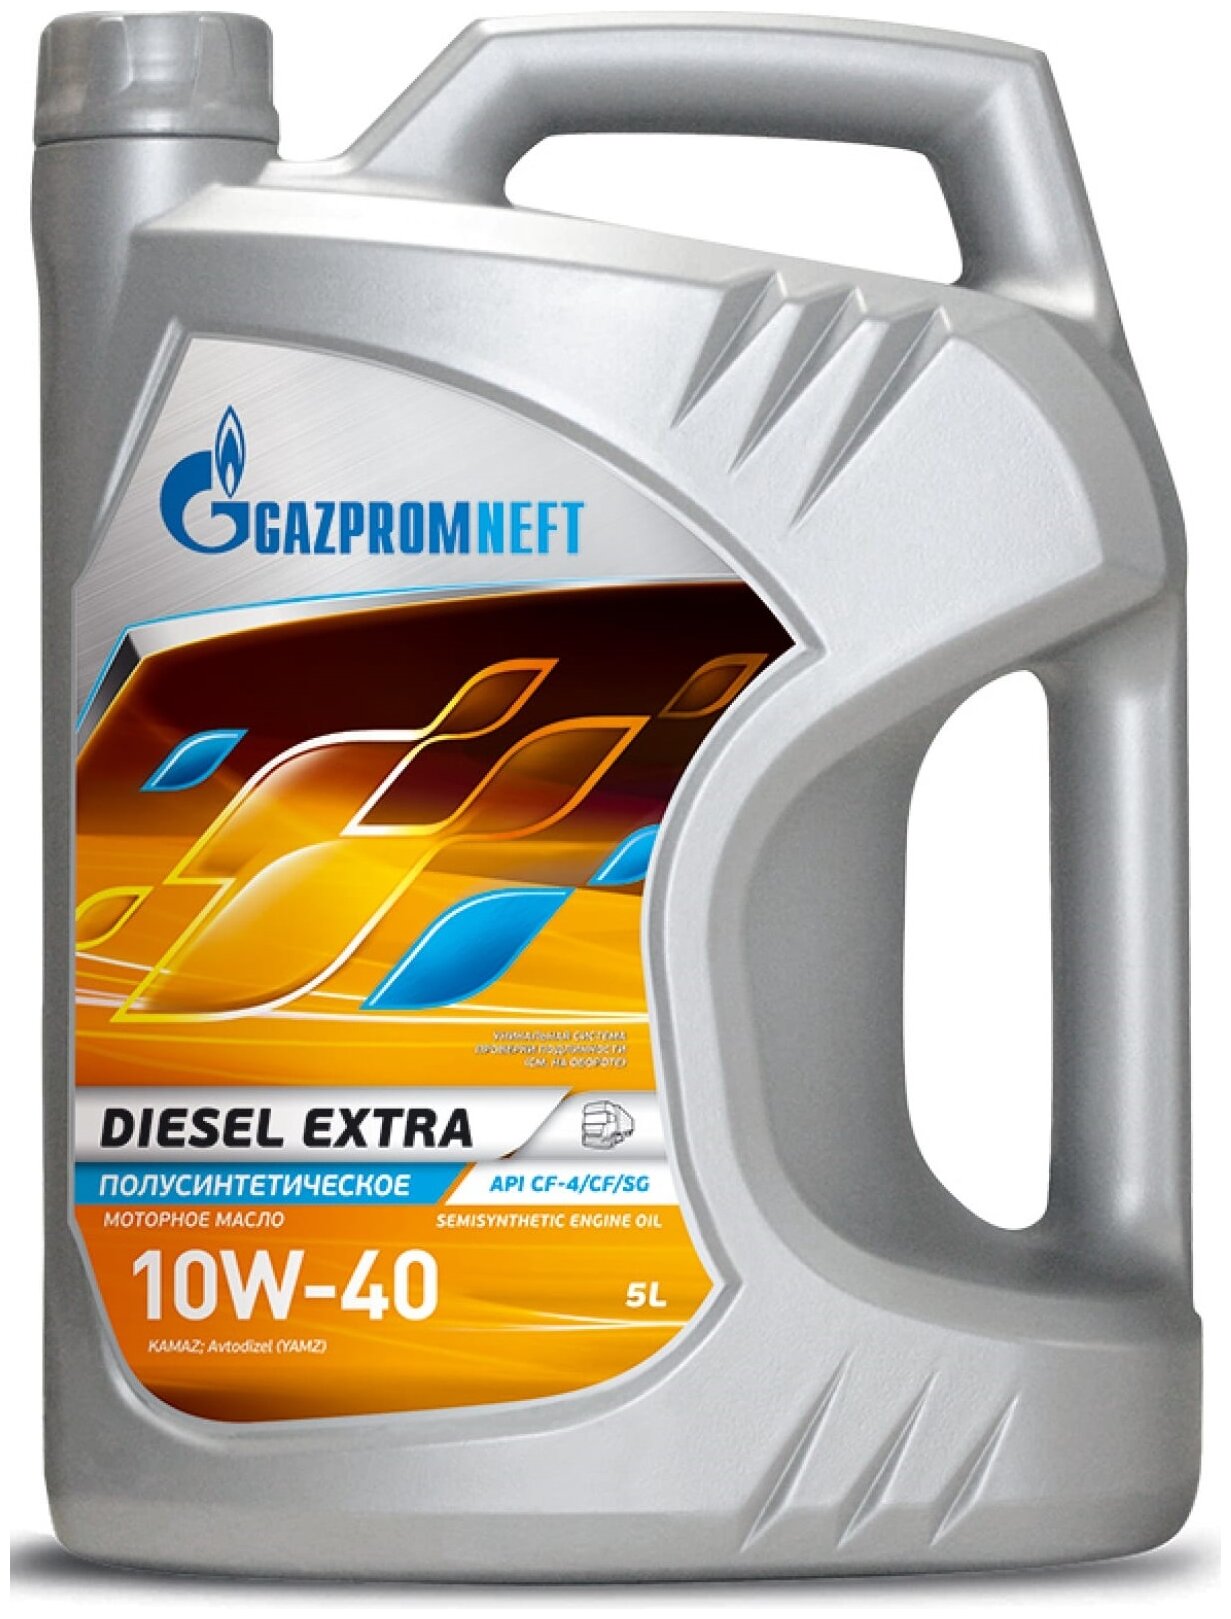 Синтетическое моторное масло Газпромнефть Diesel Extra 10W-40